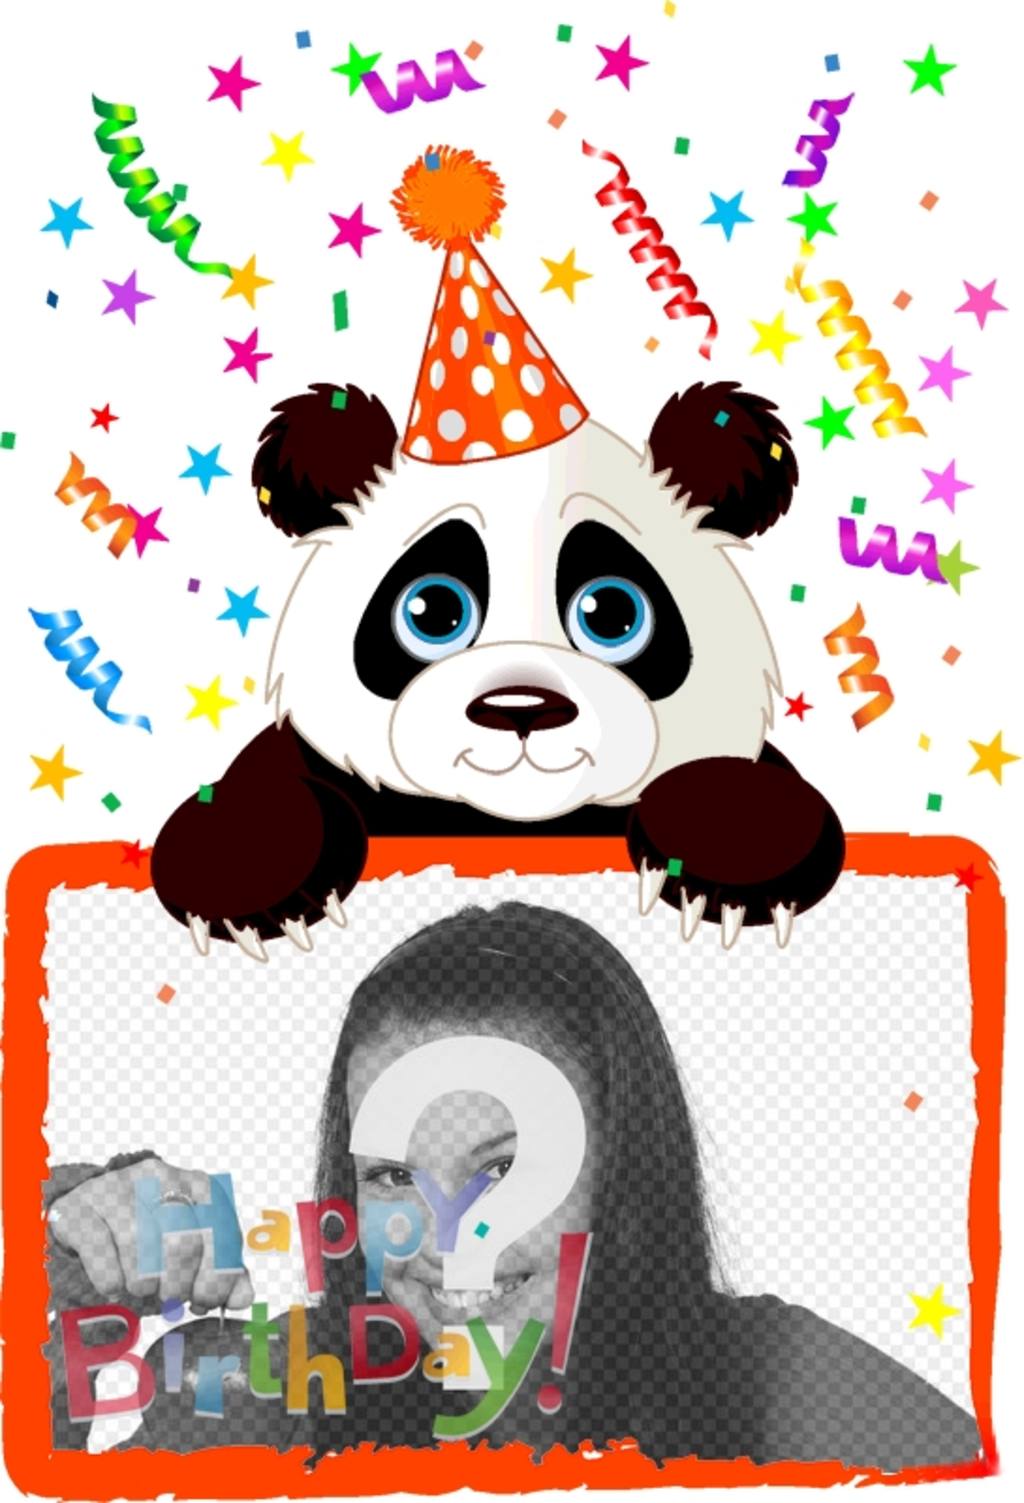 Auguri di compleanno cartolina con un panda ..